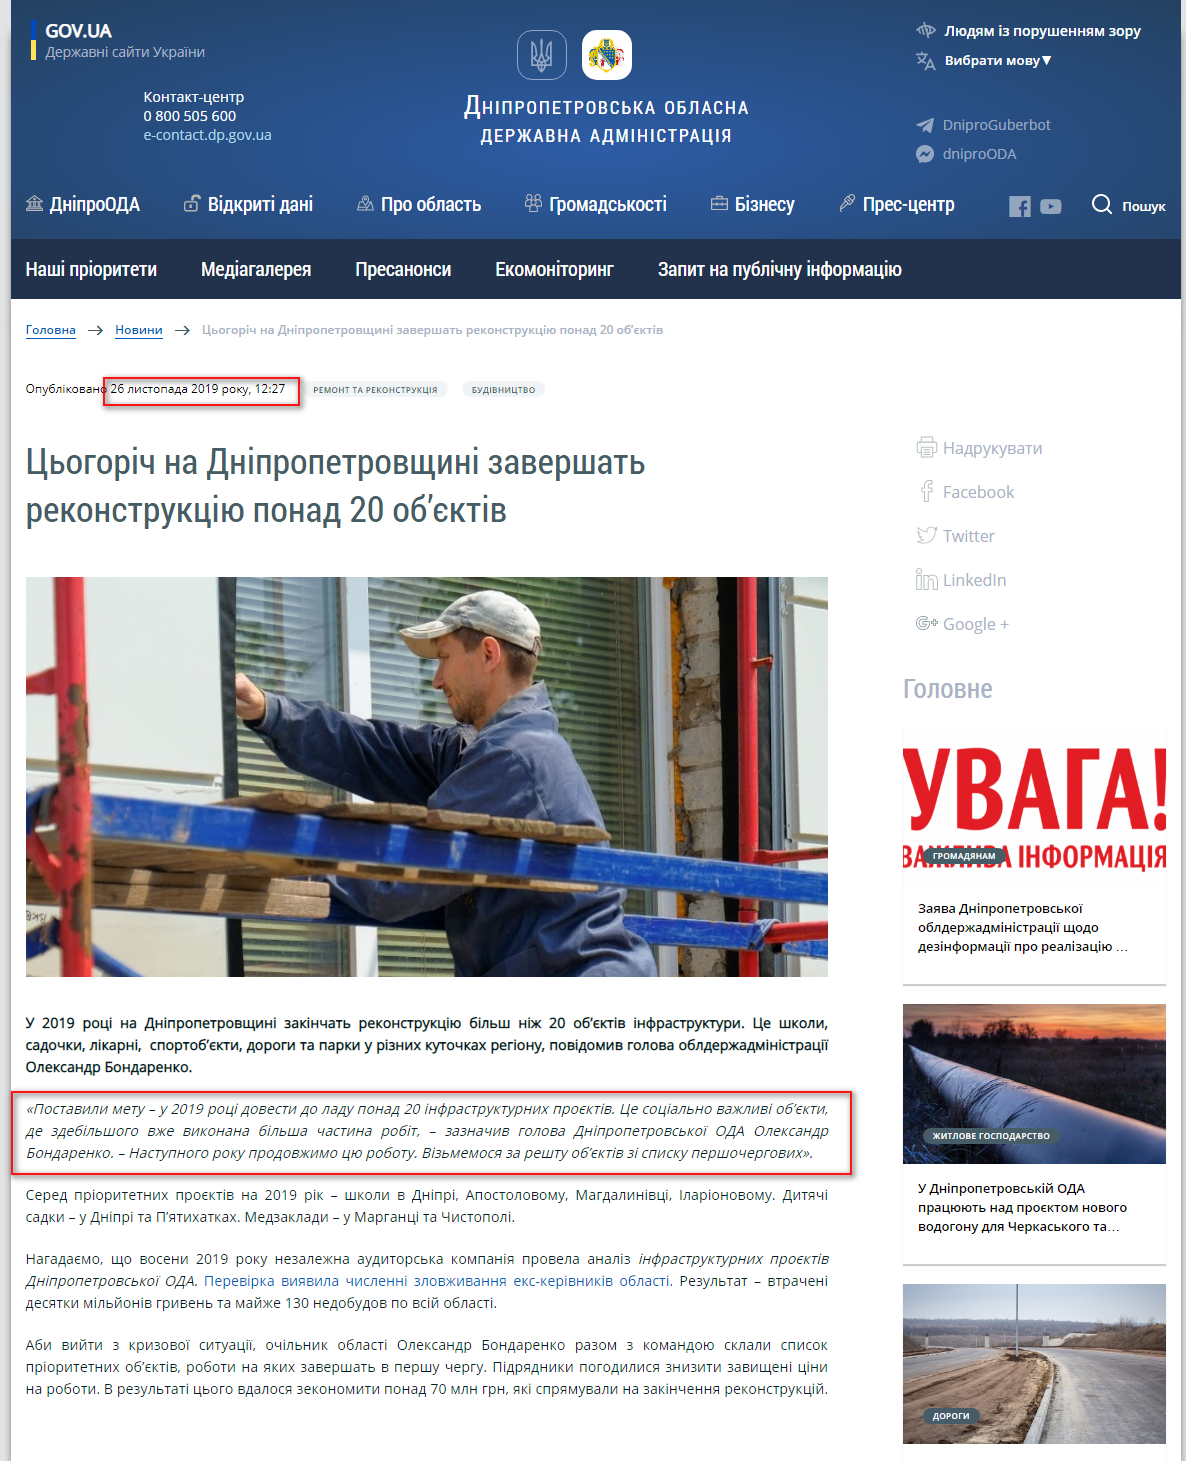 https://adm.dp.gov.ua/ua/news/cogorich-na-dnipropetrovshchini-zavershat-rekonstrukciyu-ponad-20-obyektiv